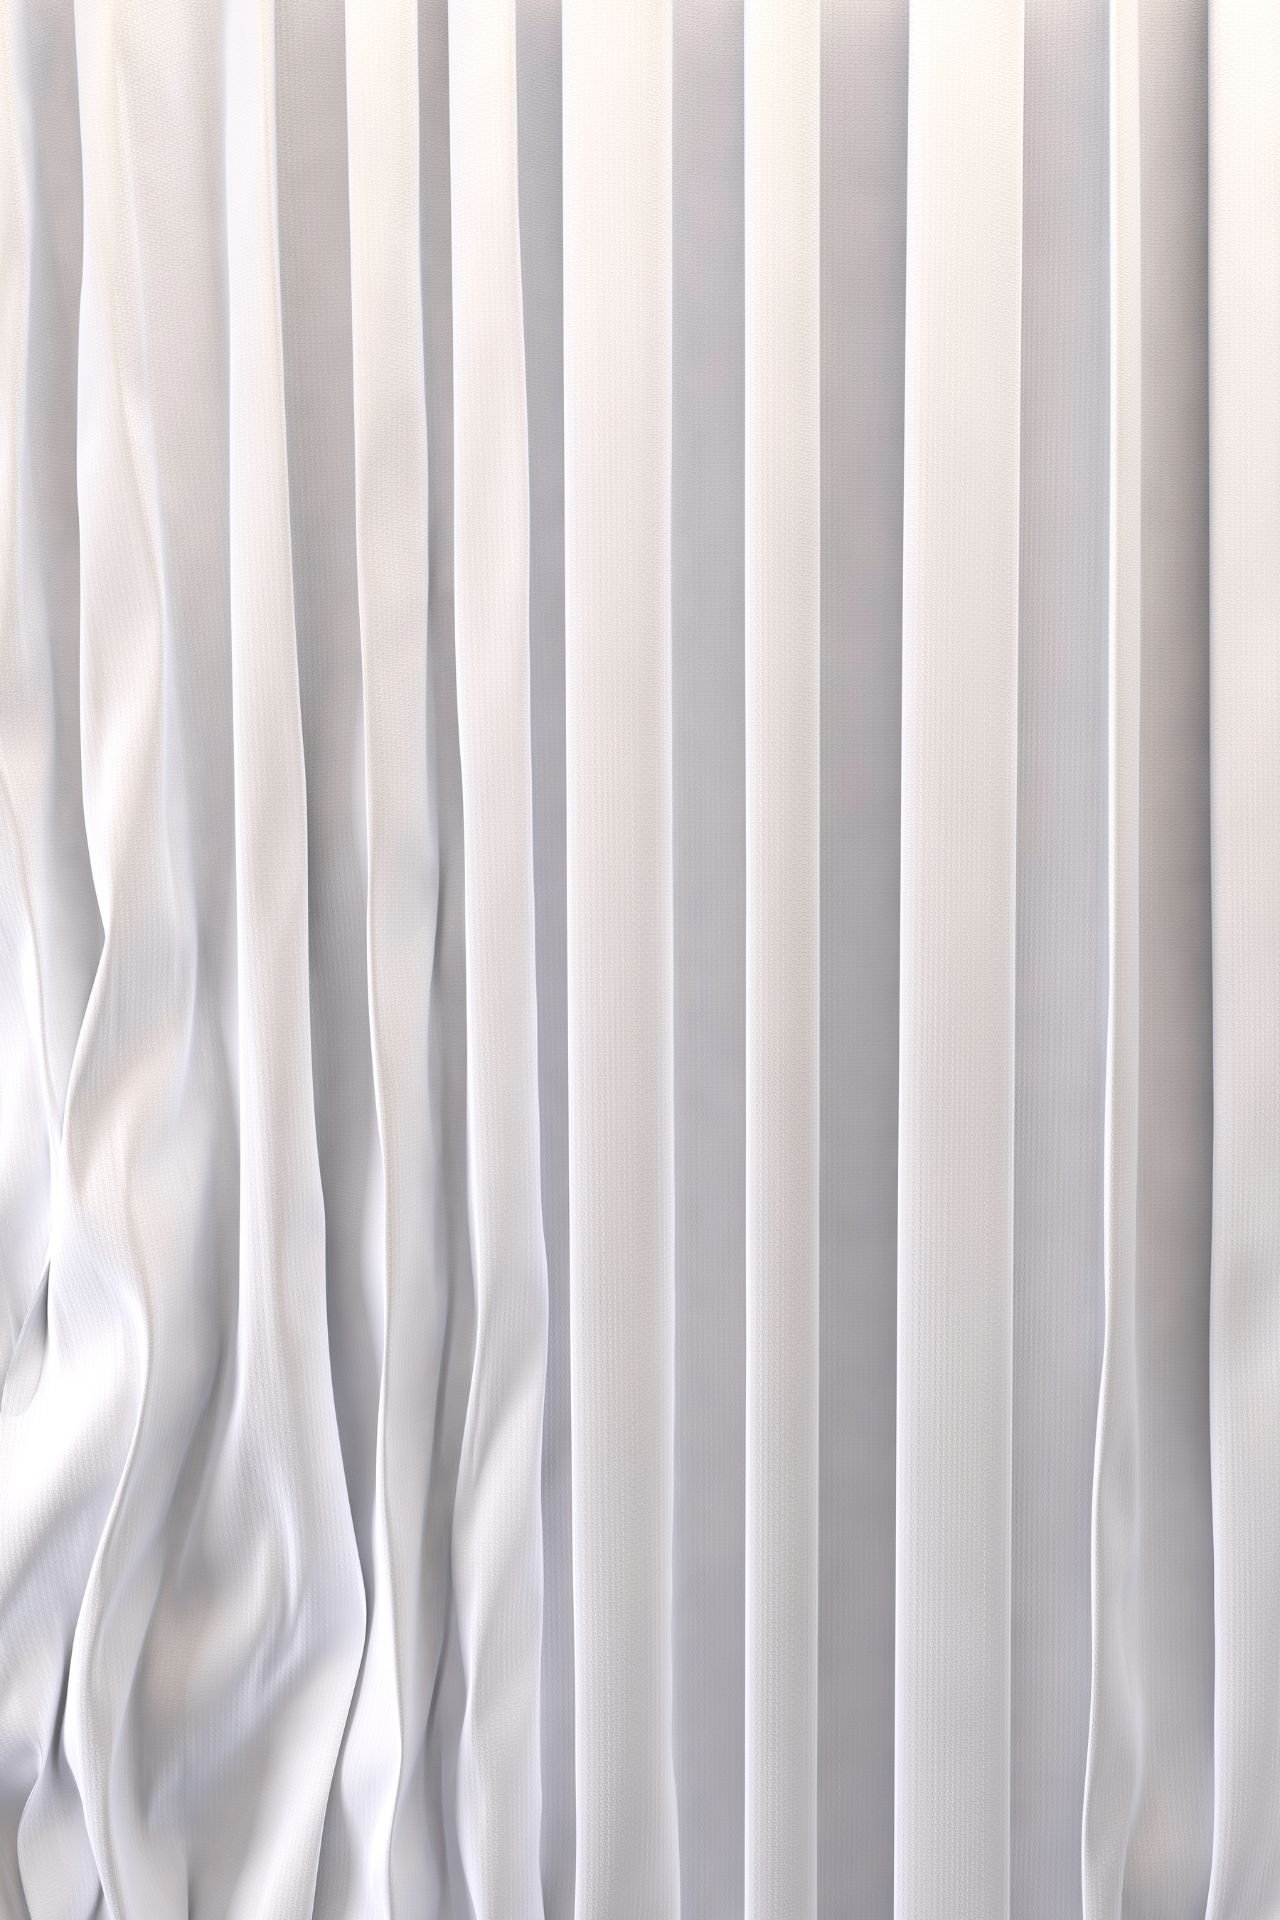 Silk Curtains in Dubai 2